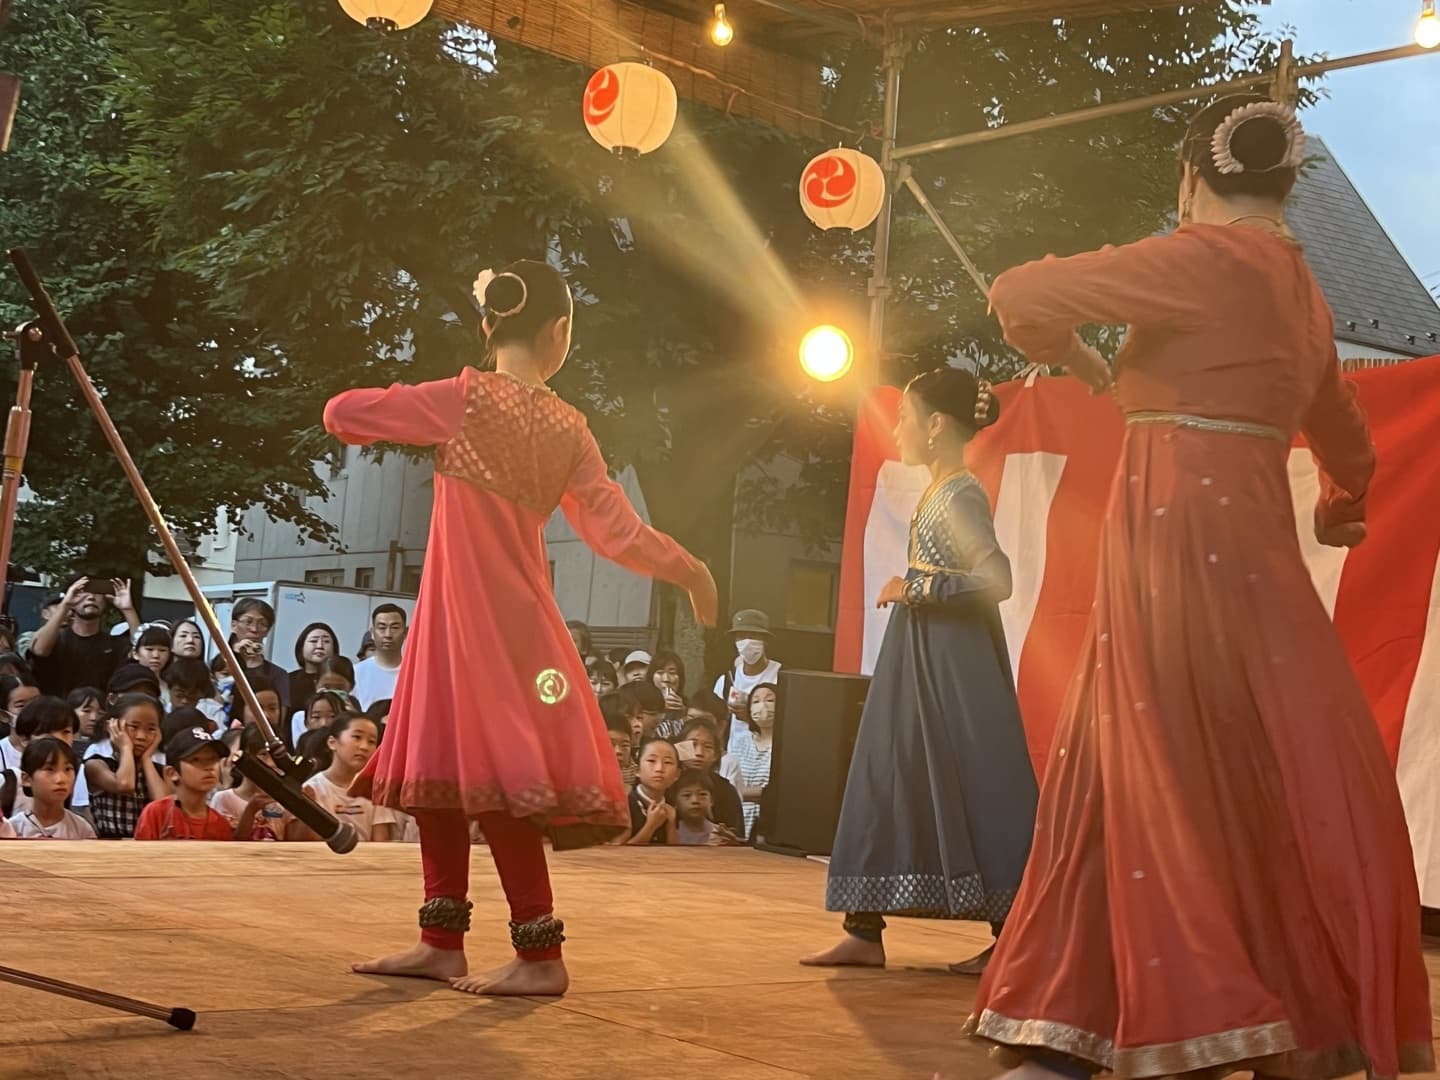 世田谷上町の天祖神社のお祭りでカタックを踊るカダムジャパンこども。